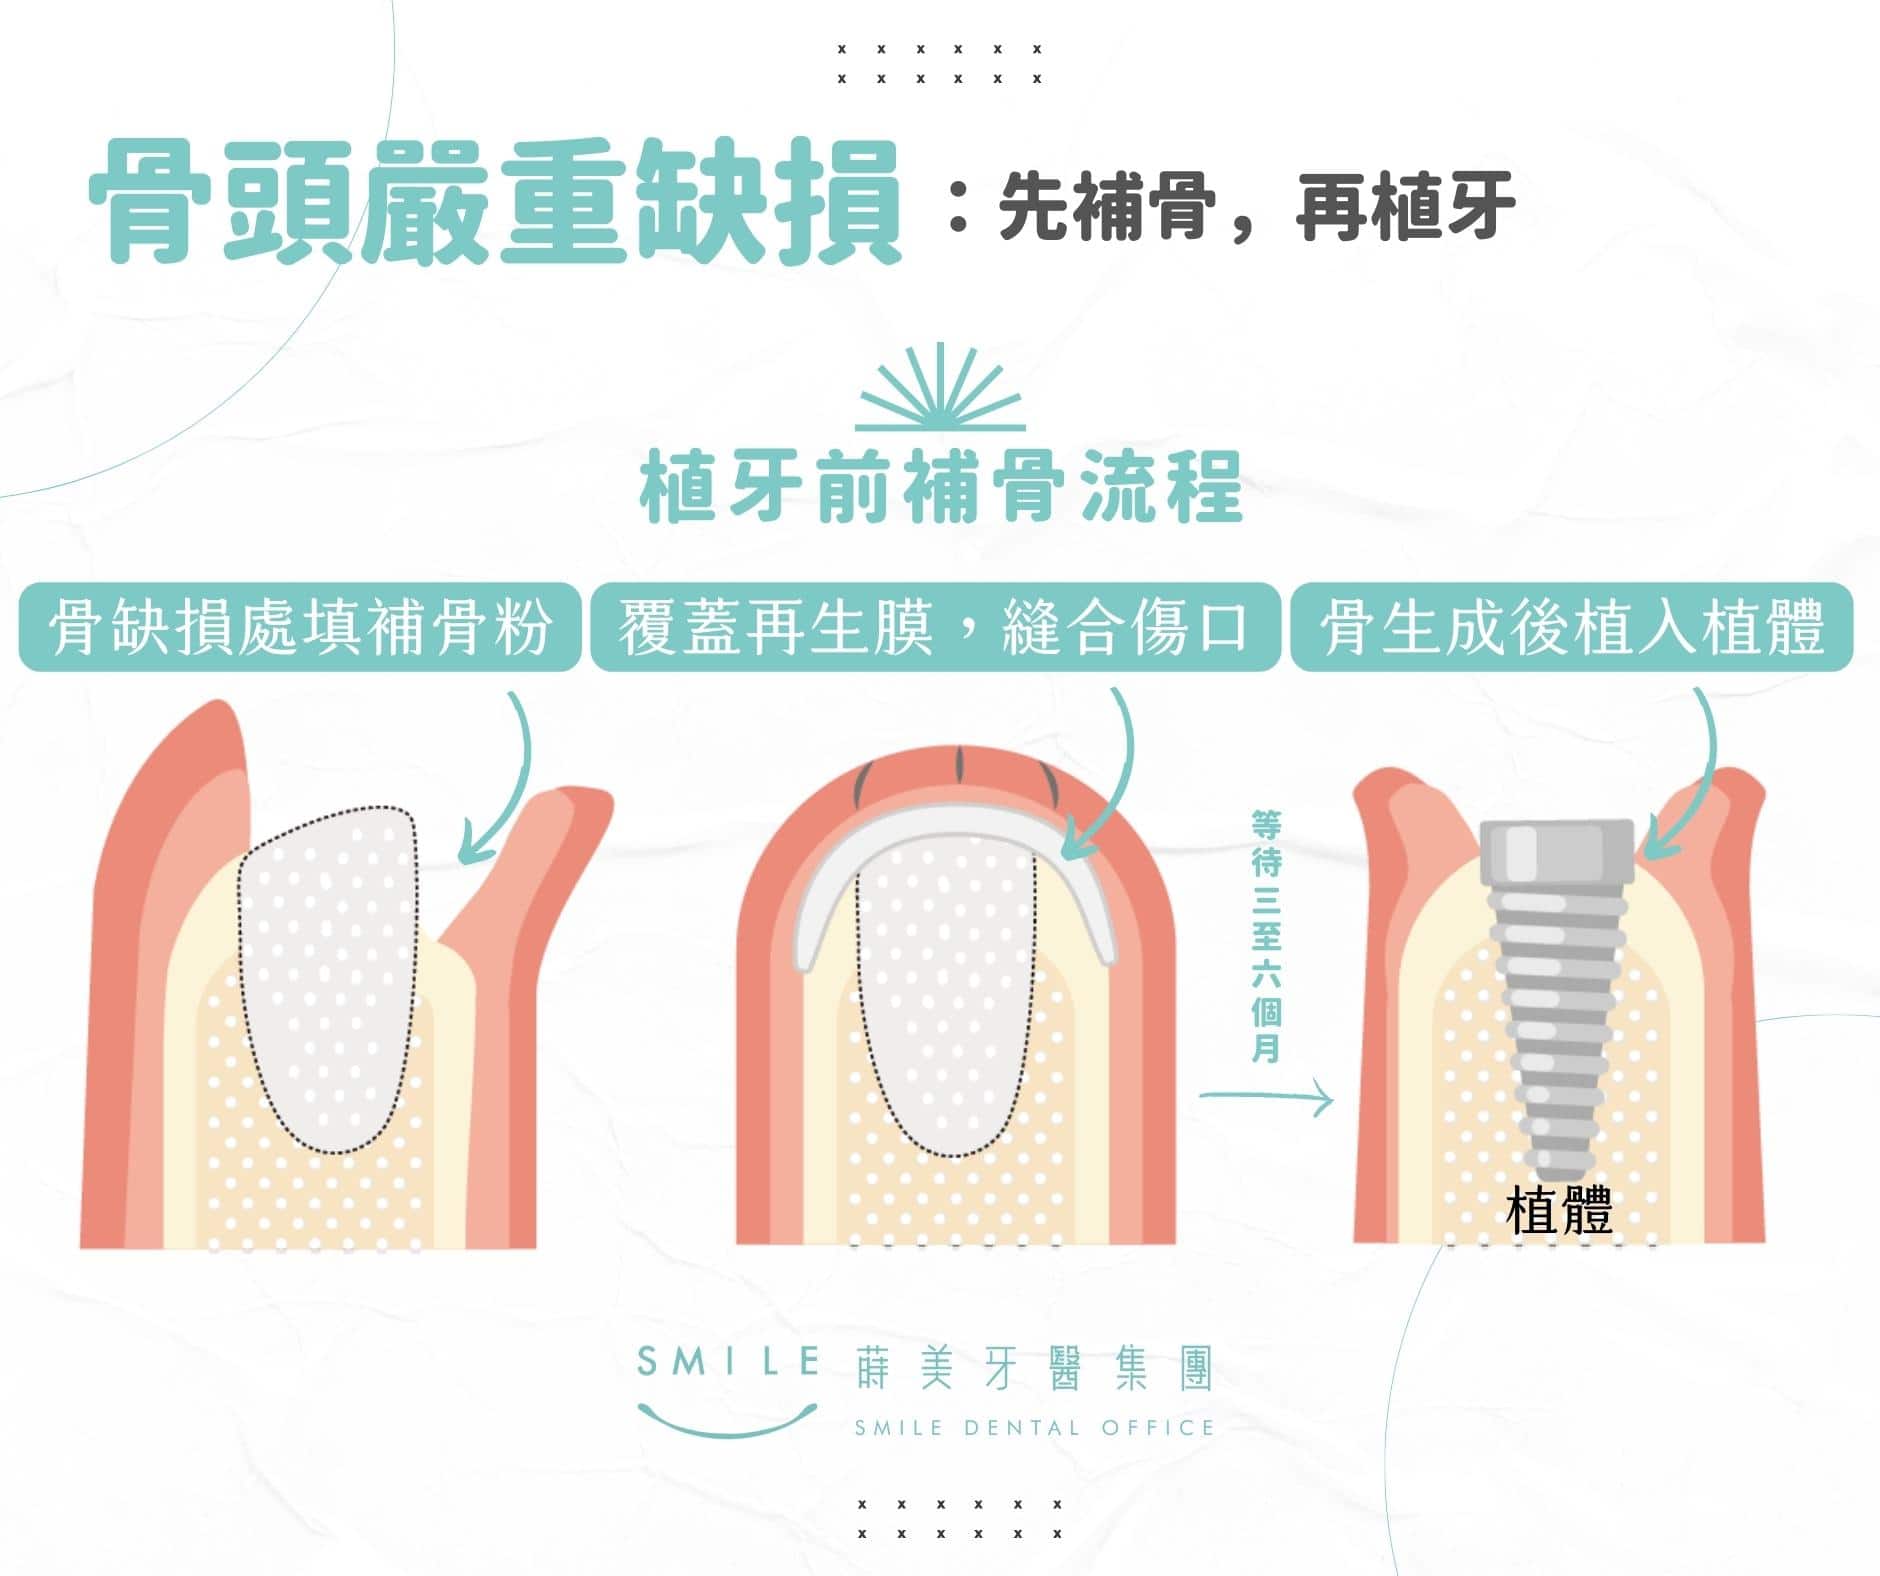 植牙補骨粉過程